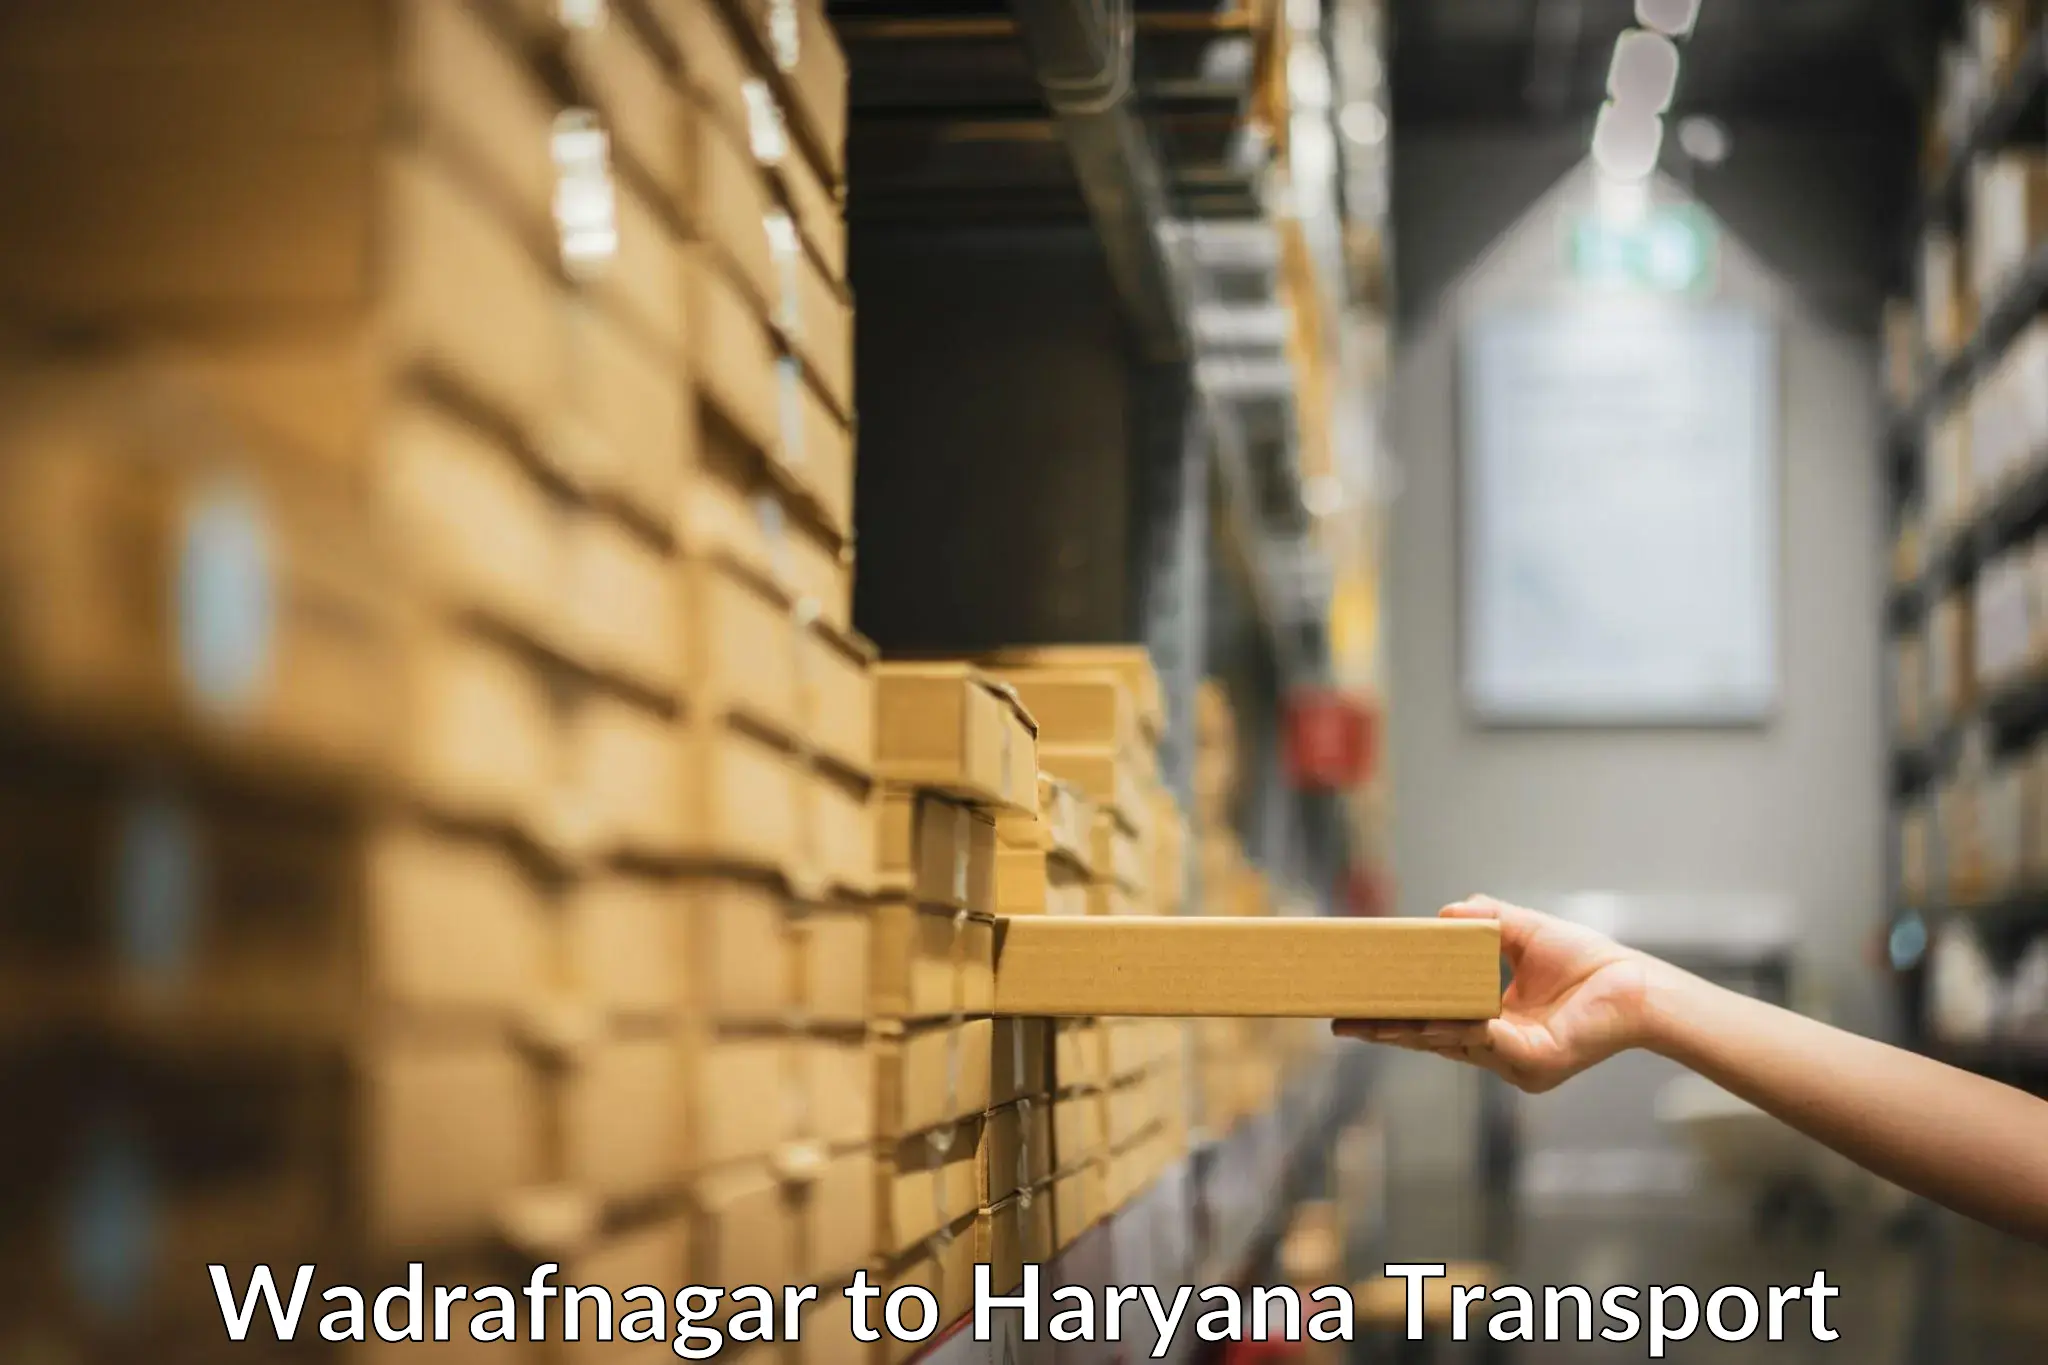 International cargo transportation services Wadrafnagar to Loharu